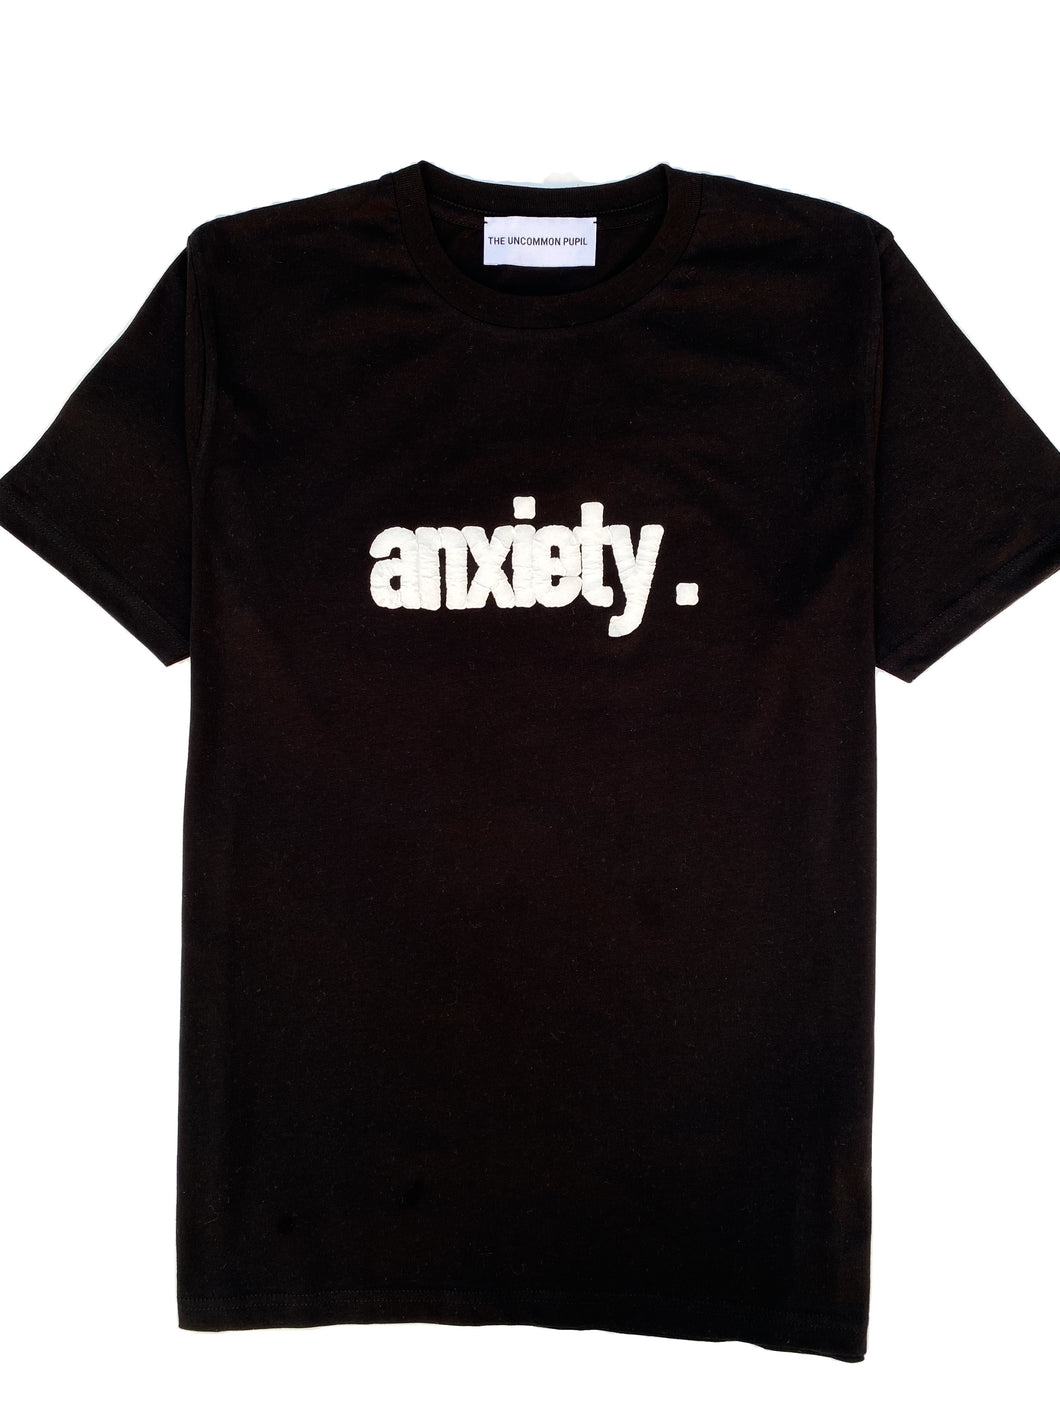 anxiety. T-shirt - Black